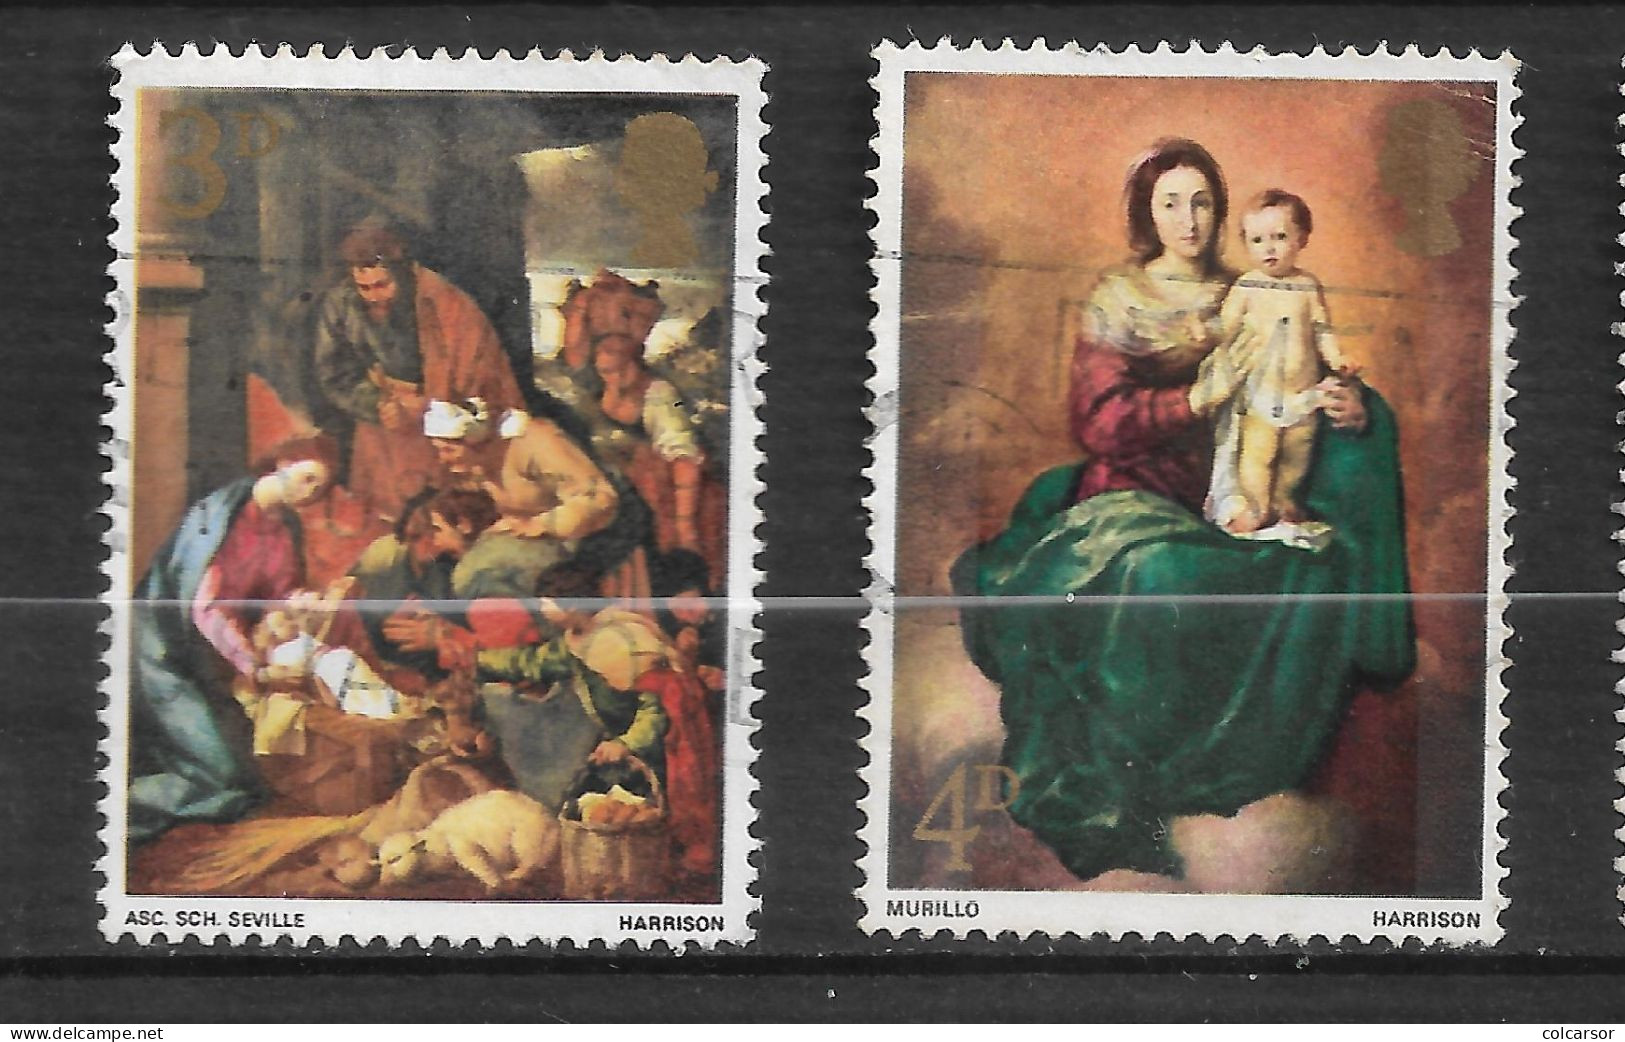 GRANDE  BRETAGNE " N°  499  /  500  " NOËL " - Used Stamps